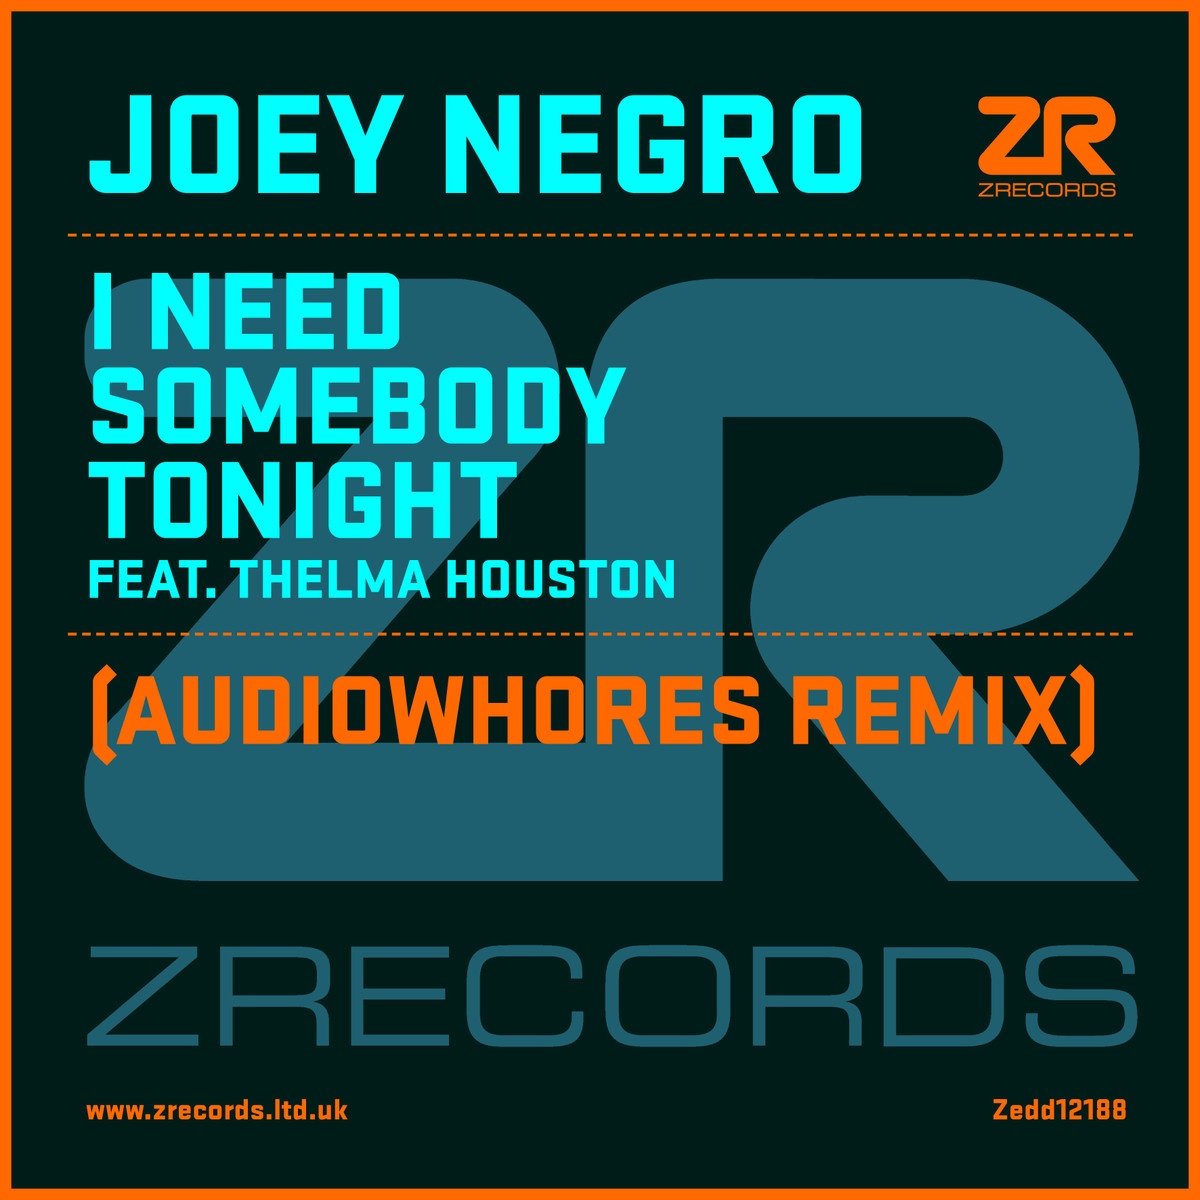 I Need Somebody Tonight Feat. Thelma Houston (Accapella 1)